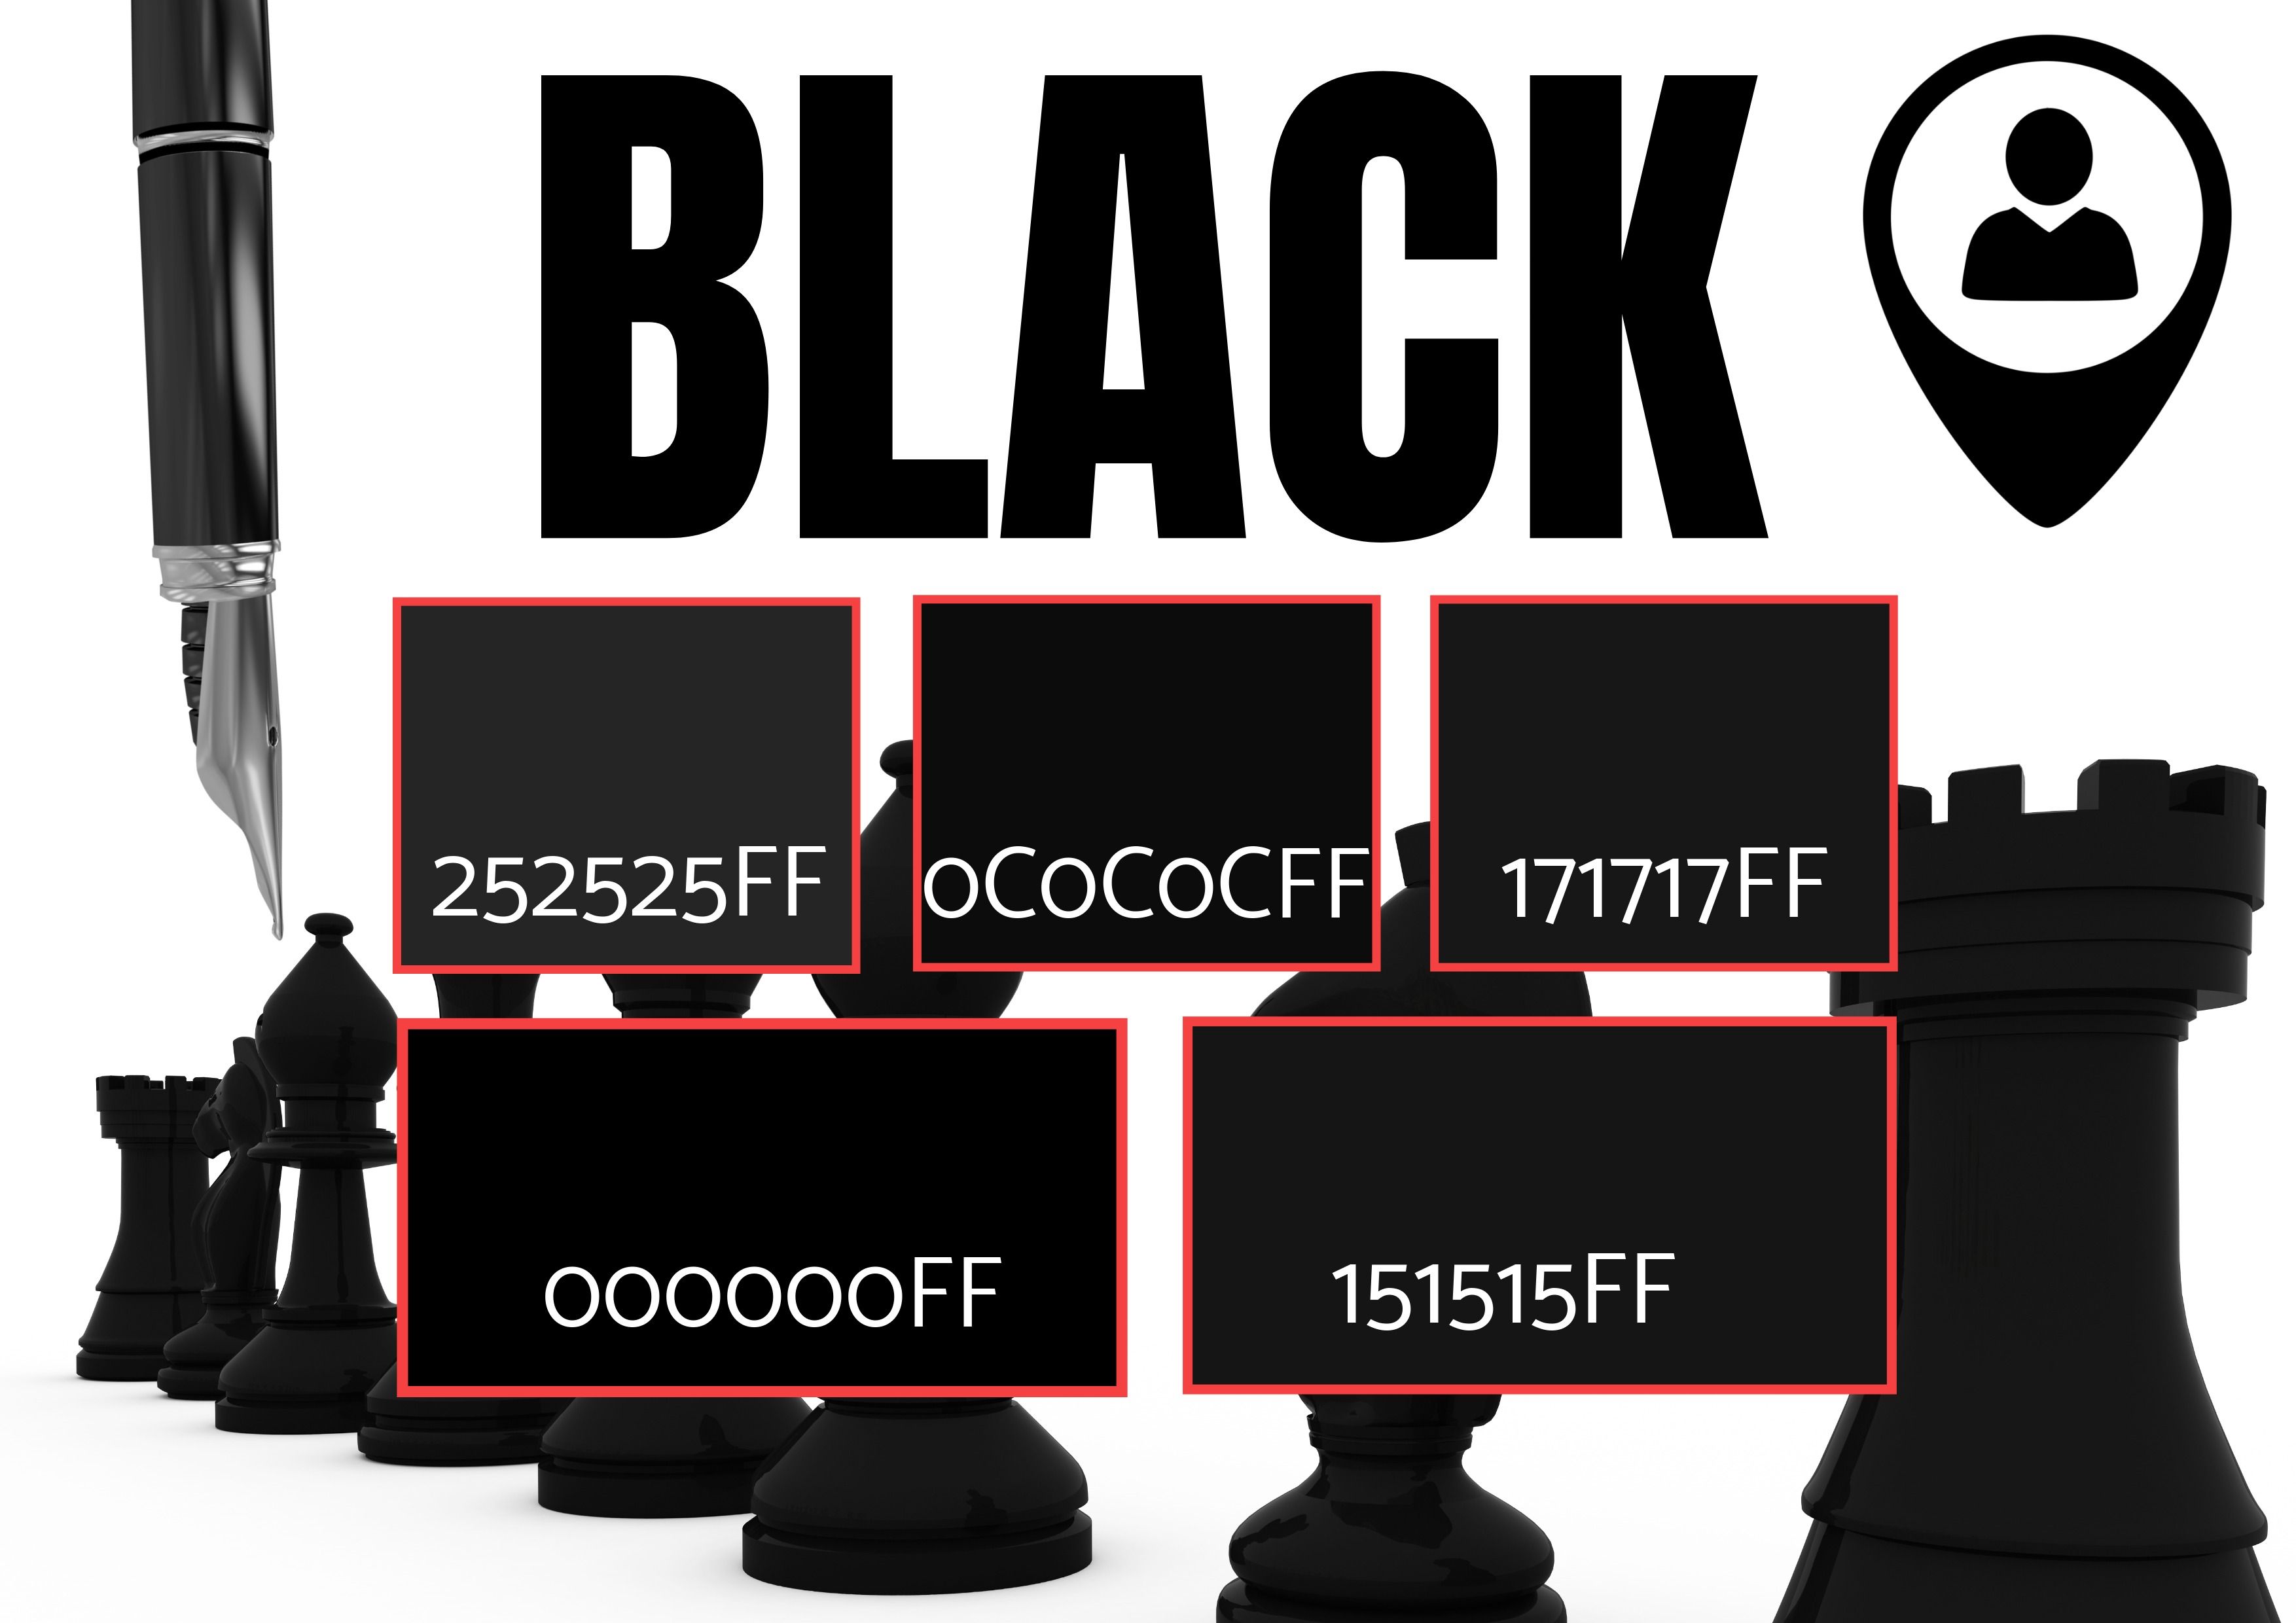 Seleção de 5 tons de preto com imagens de peças de xadrez, caneta e um ícone de localização - simbolismo